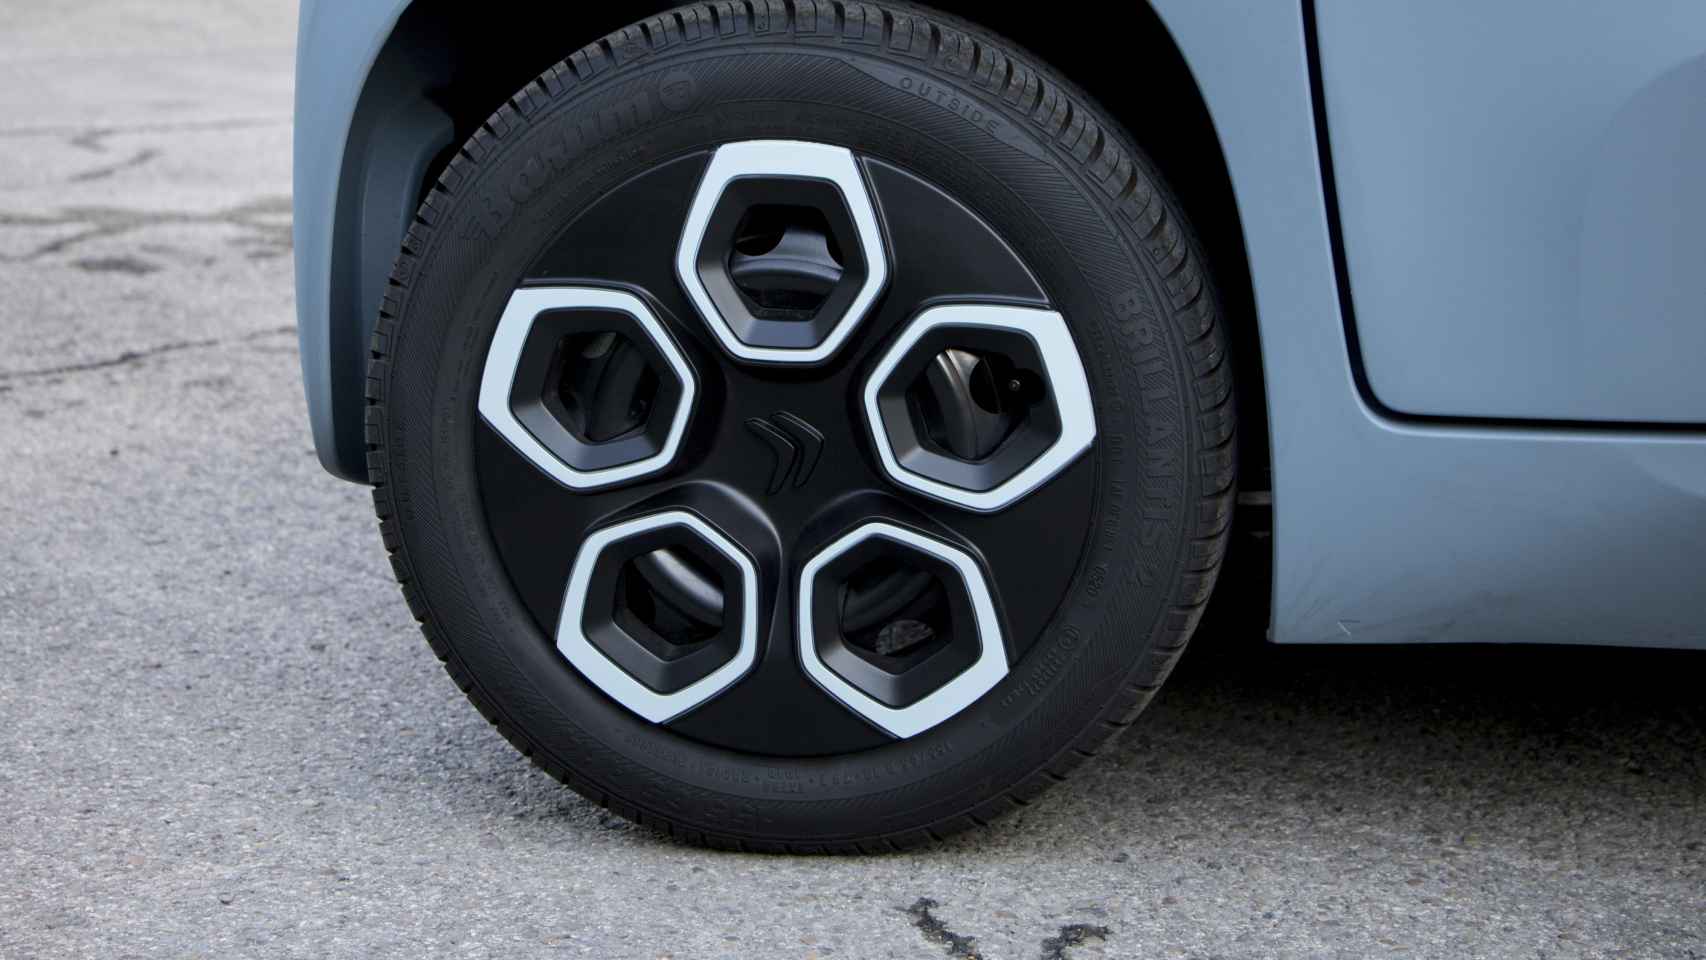 Las ruedas tienen un diámetro de 14 pulgadas.